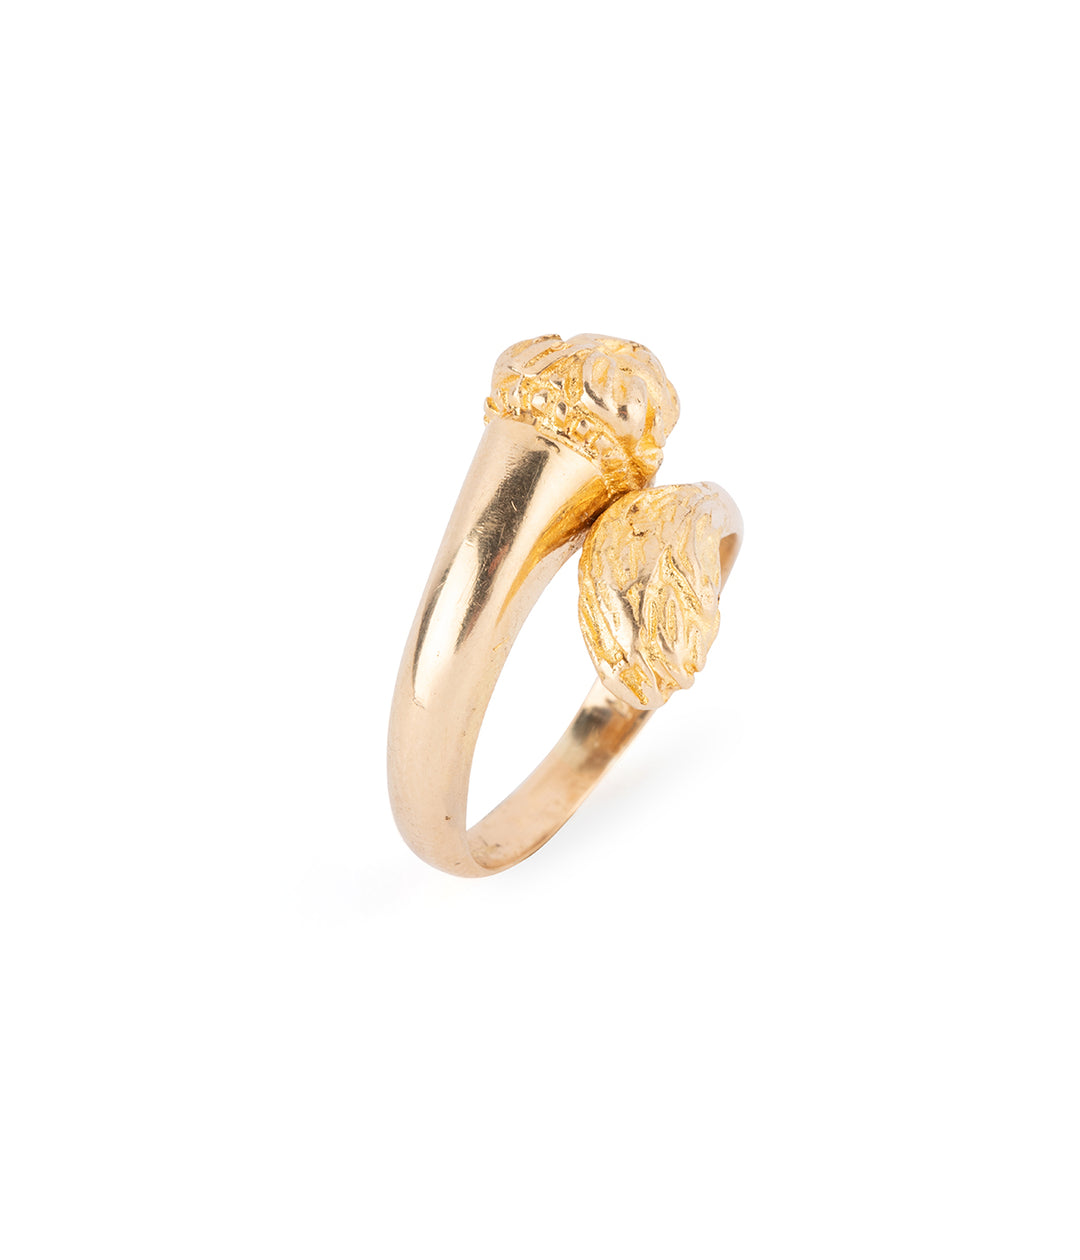 Antique lion ring 18k gold "Lisel" - Caillou Paris